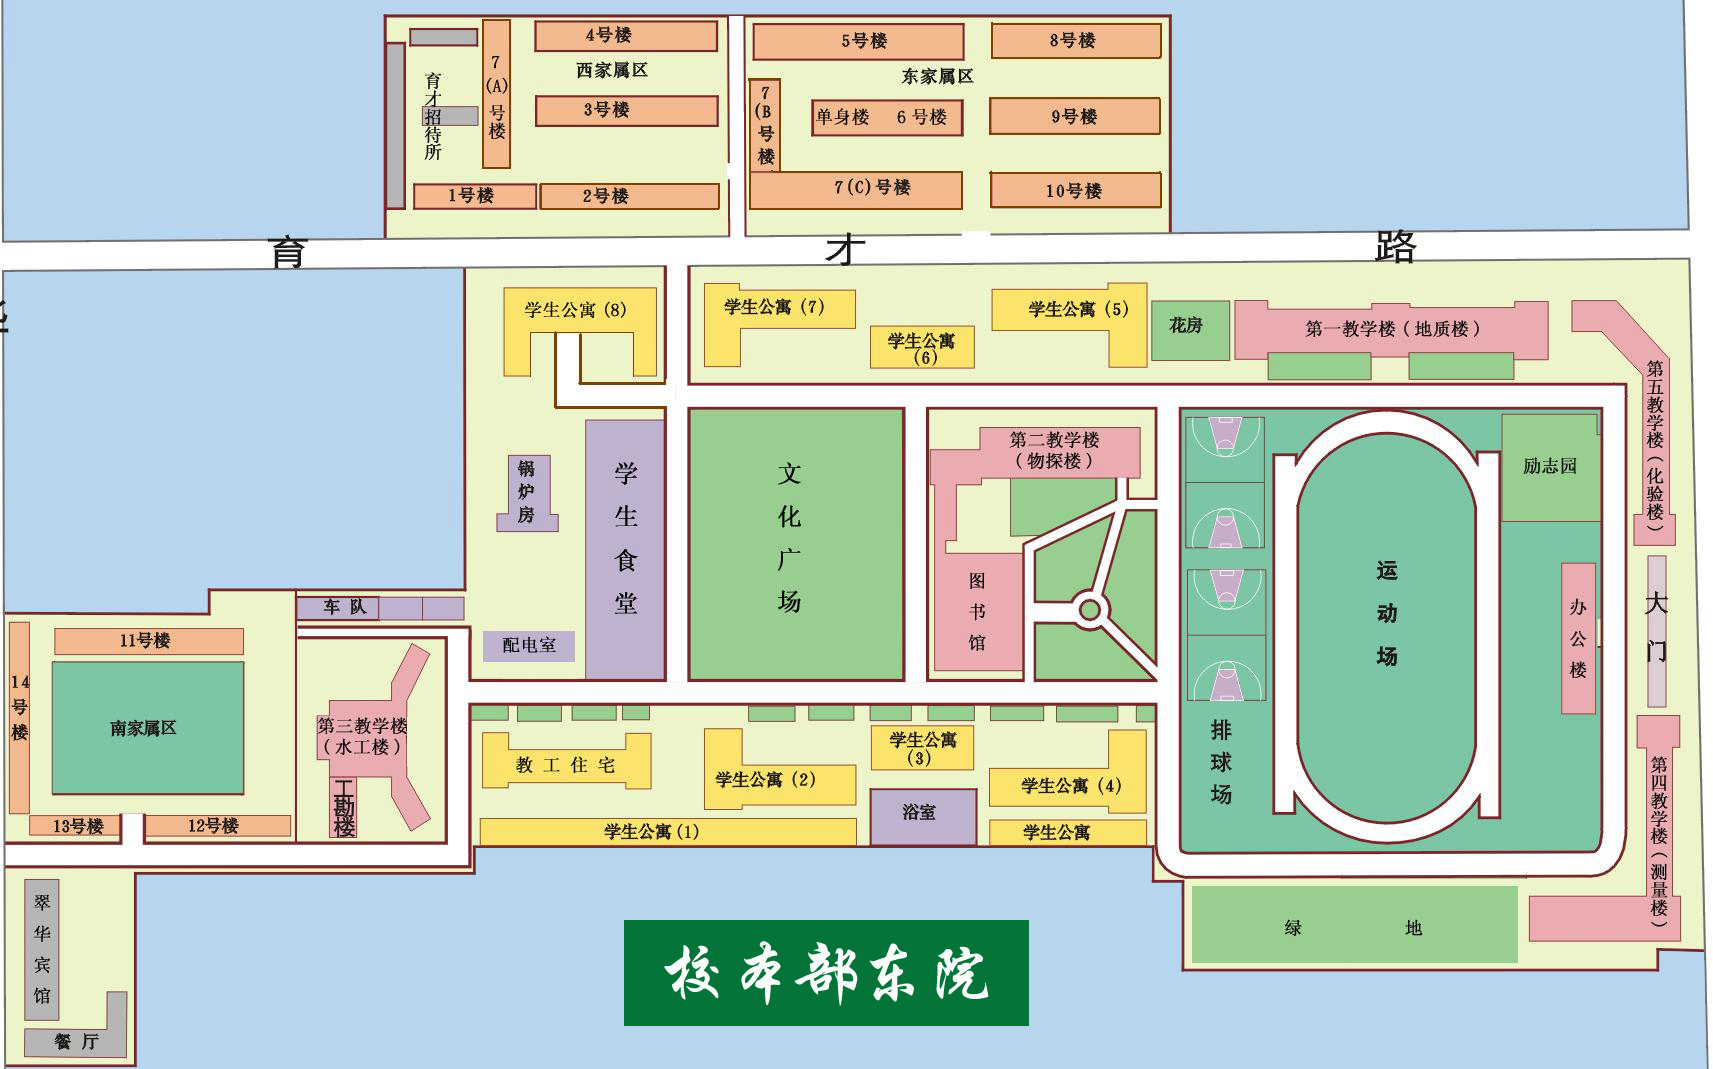 长安大学雁塔校区宿舍楼分布图和本部北院教学楼分布图